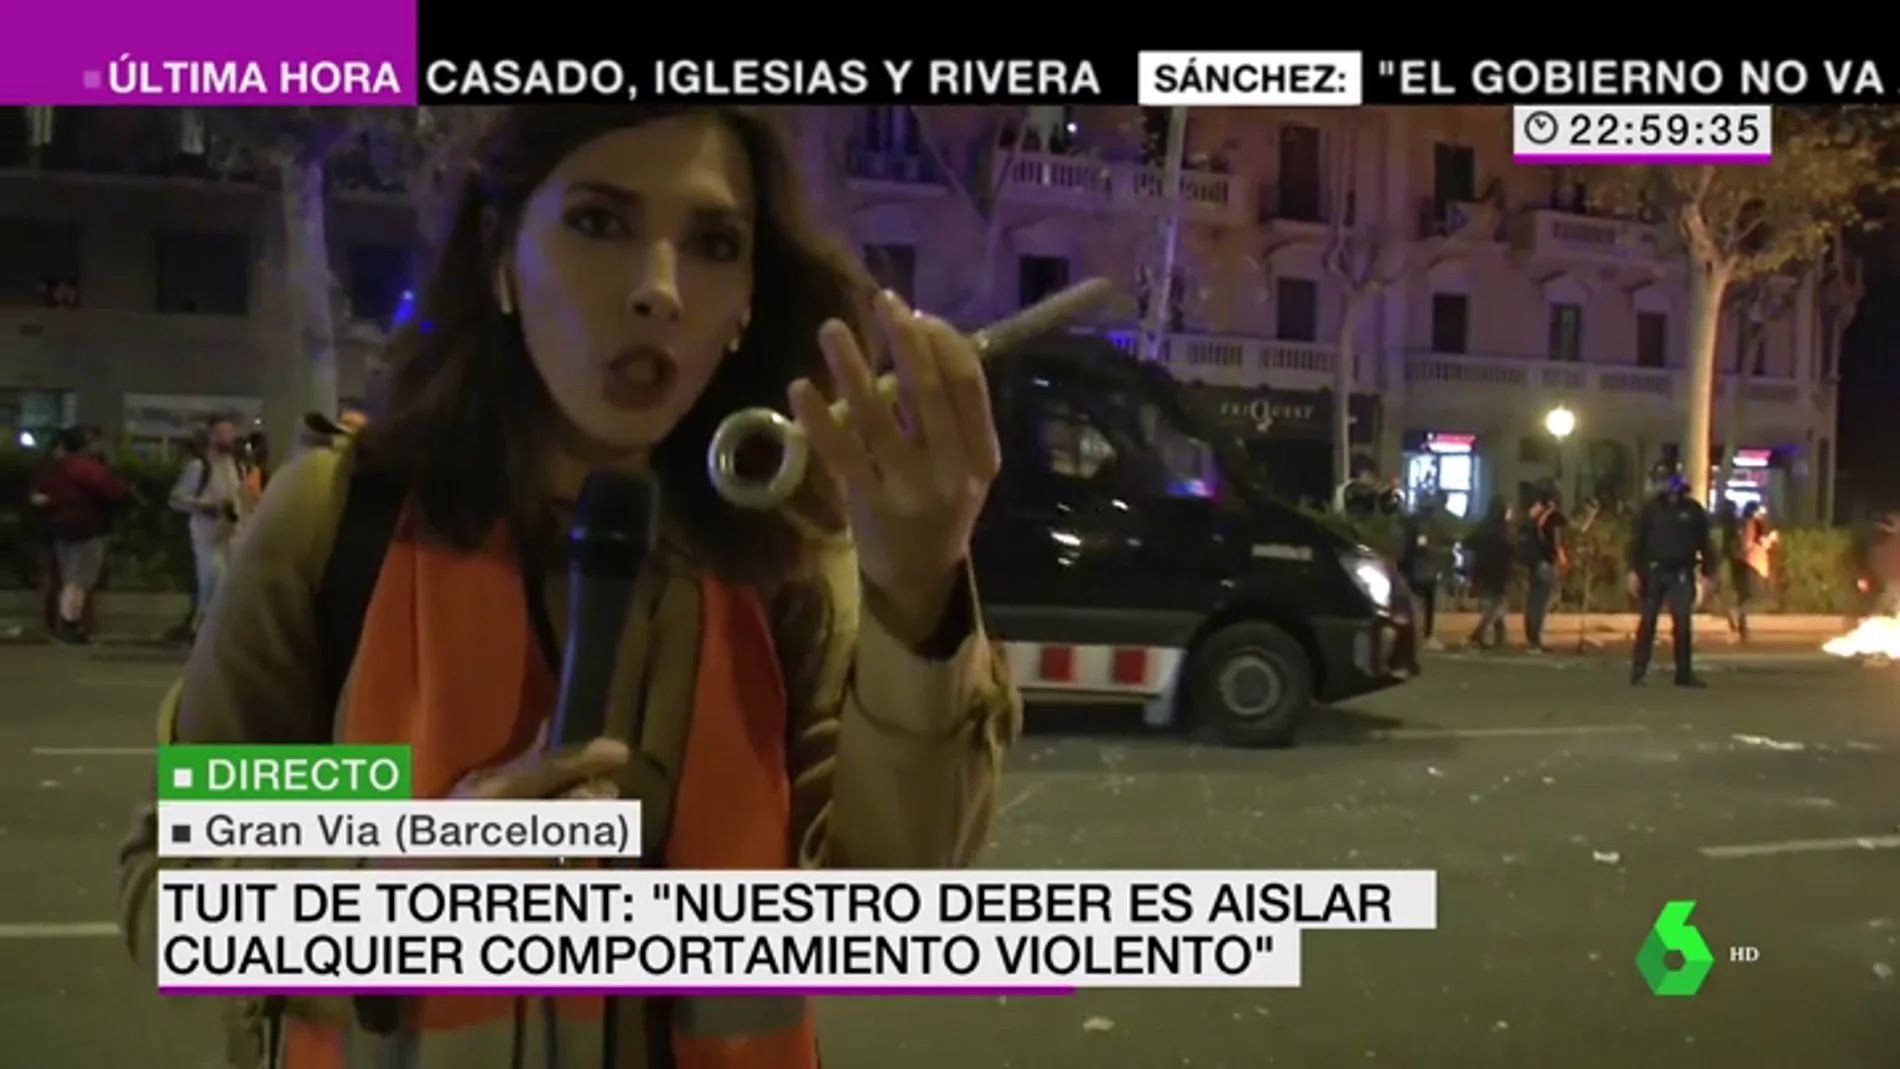 Estos son los objetos que se están lanzando en los disturbios de la Gran Vía de Barcelona